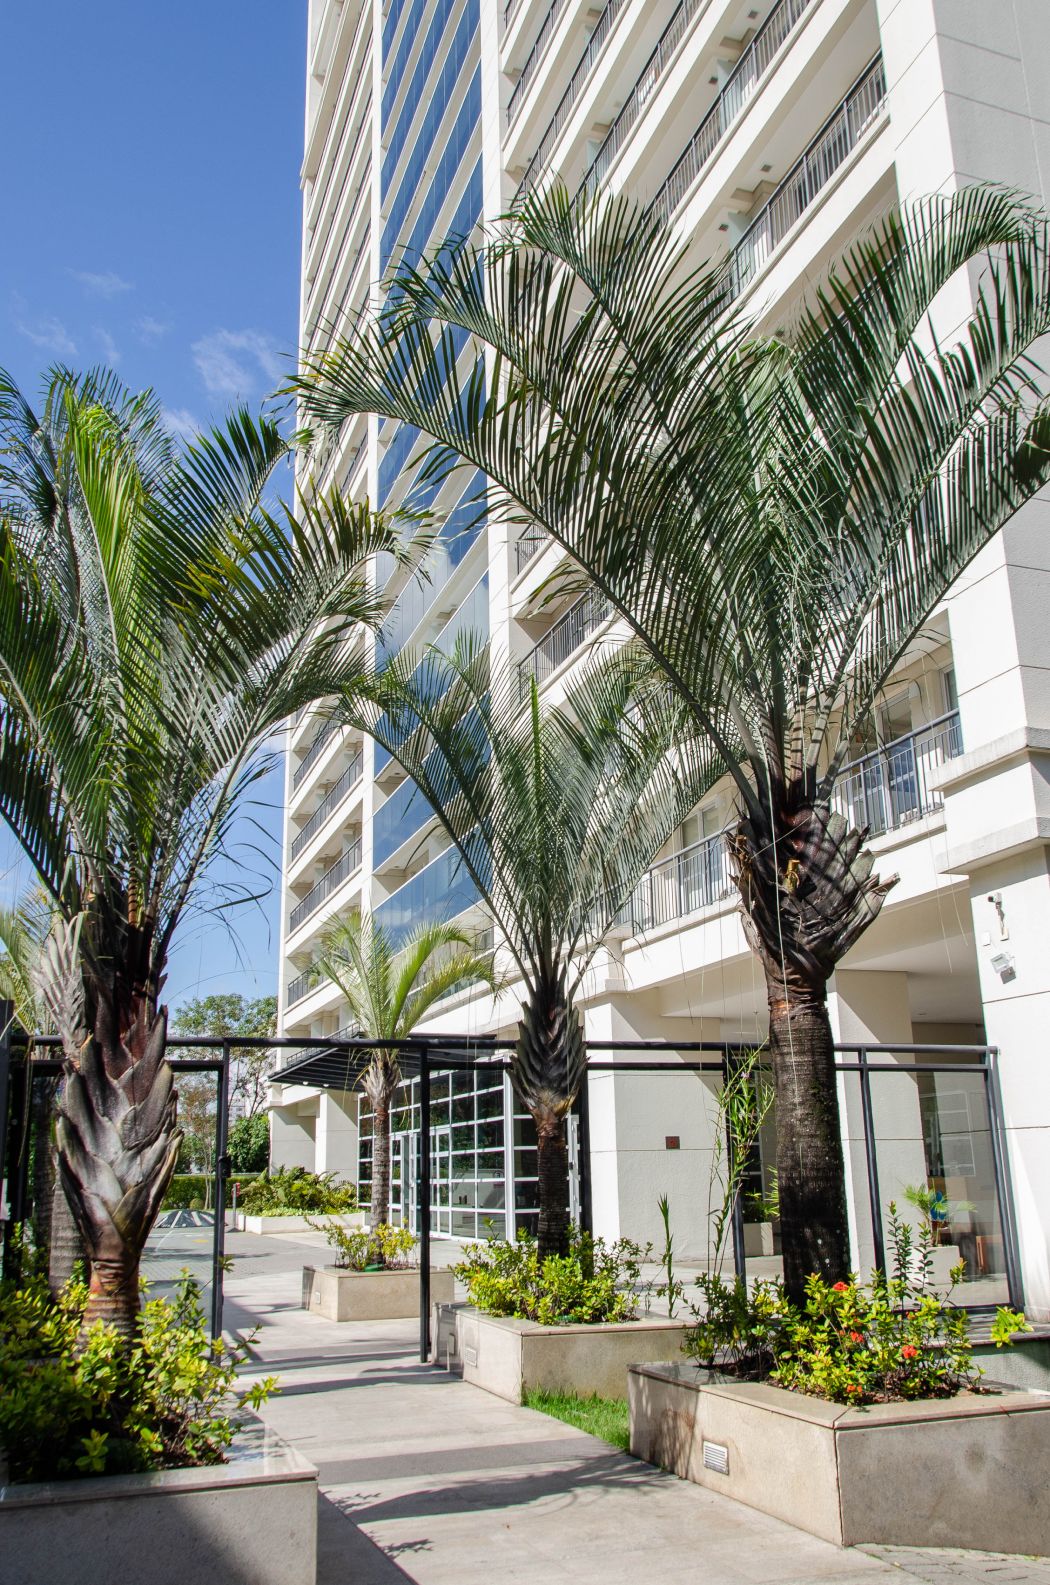 Fachada de prédio com palmeiras na entrada